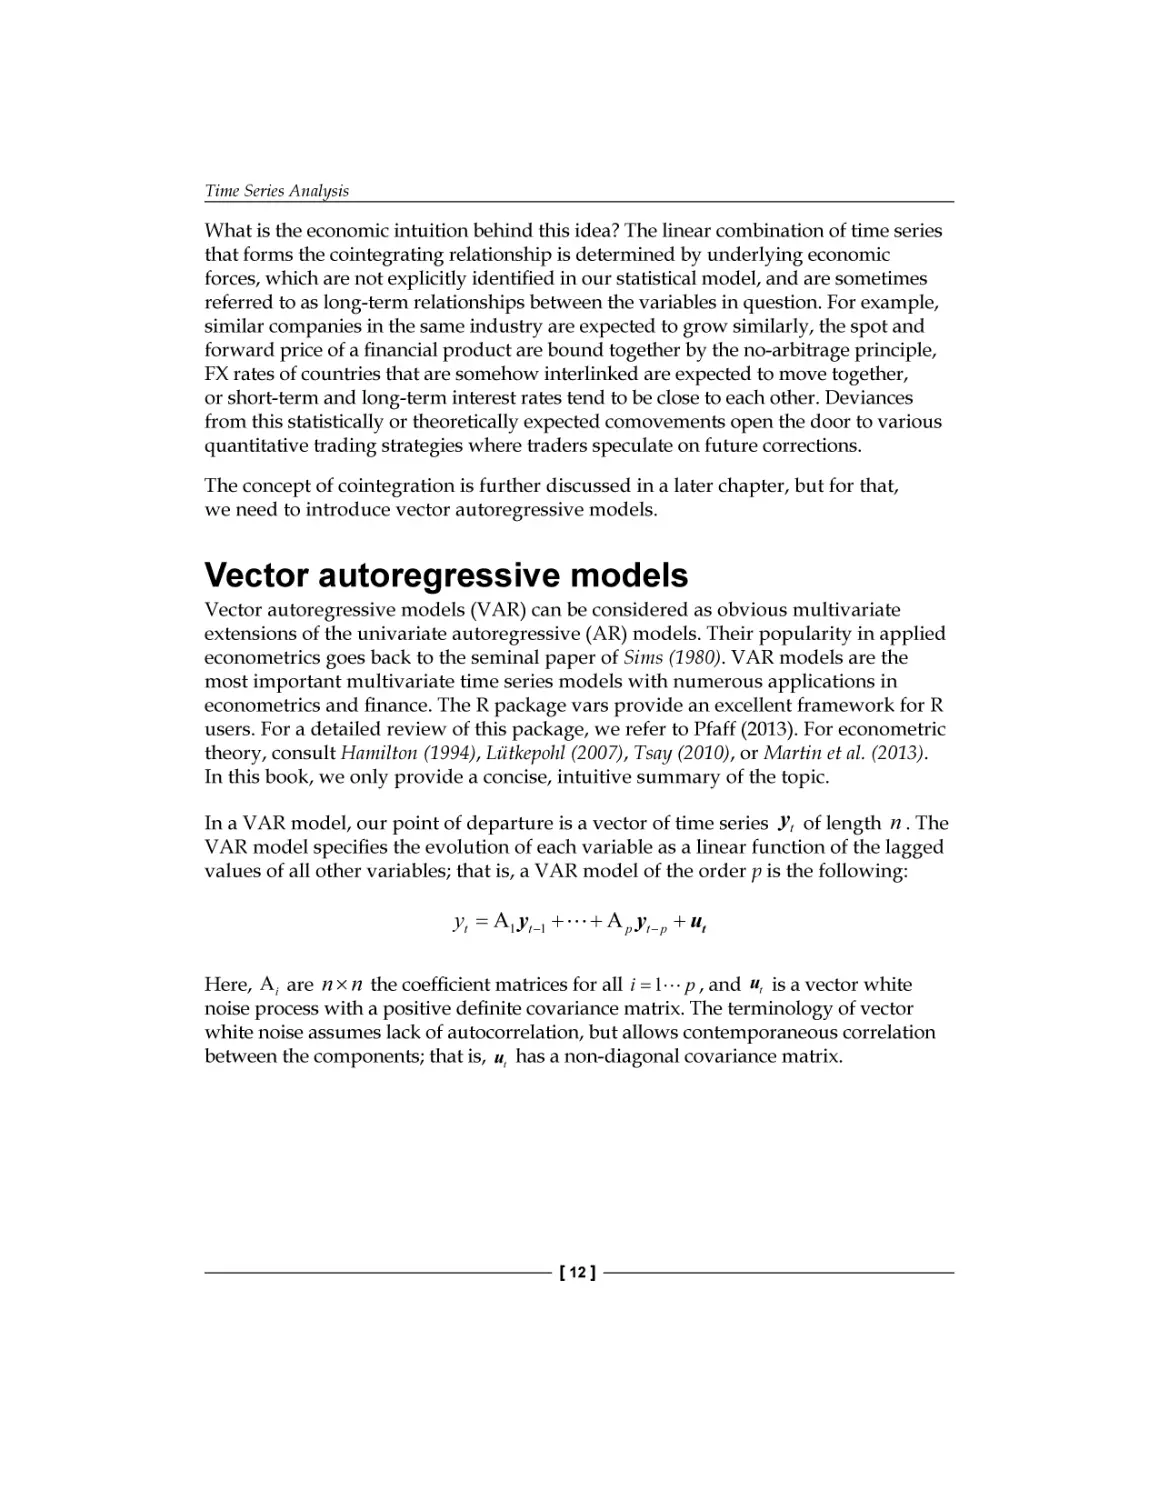 Vector autoregressive models